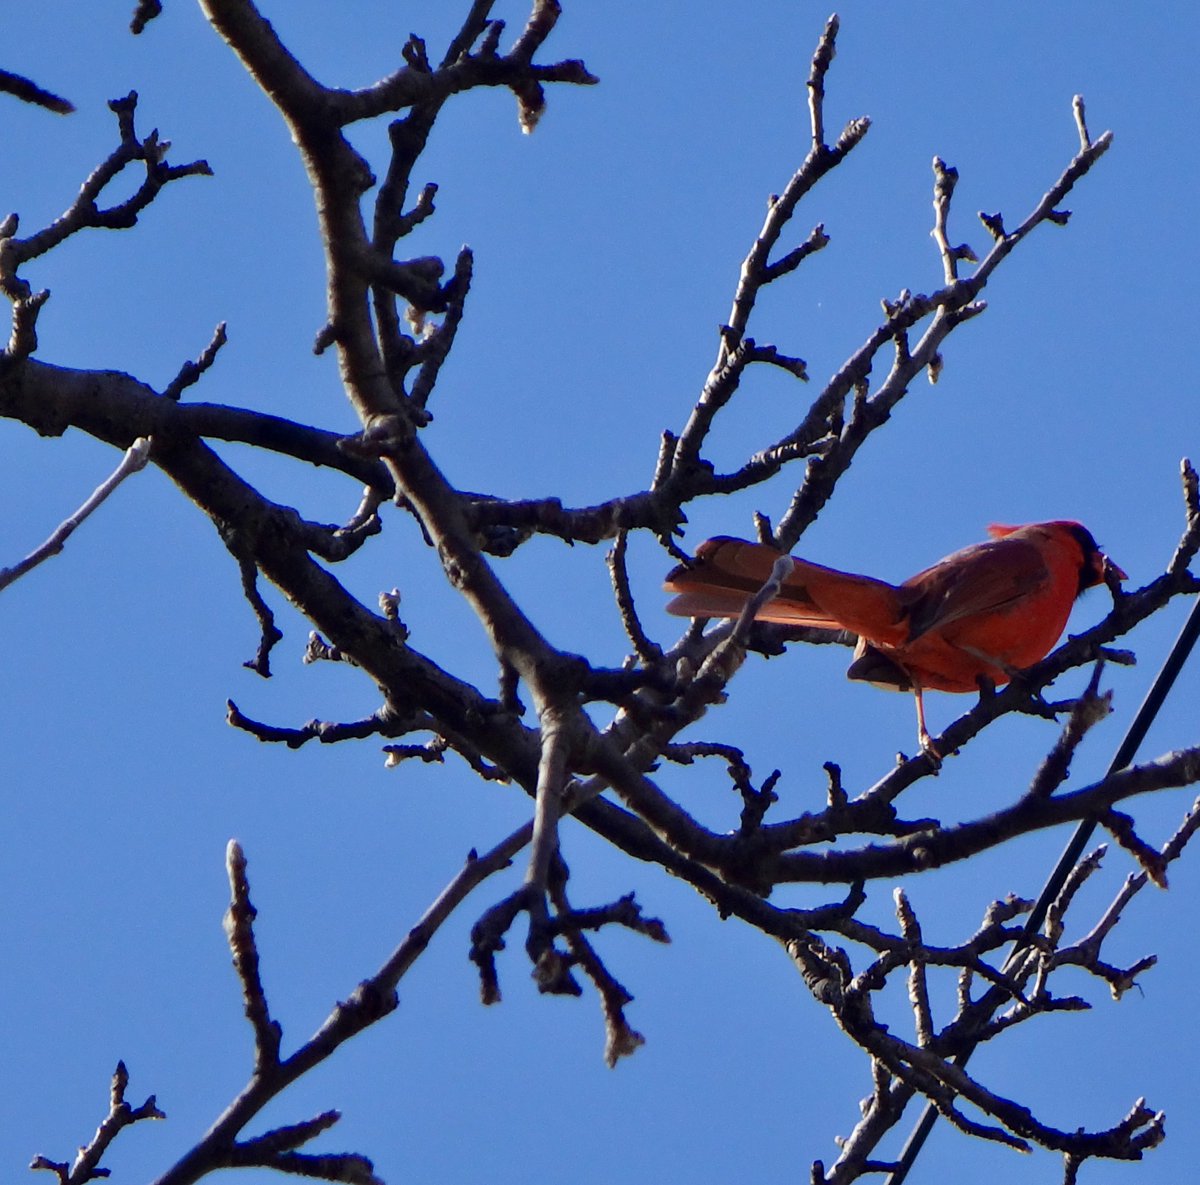 'Cardi-B' (cardinal-bird) #birds #birdwatching #nature #NaturePhotography #wildlifephotography #wildlife